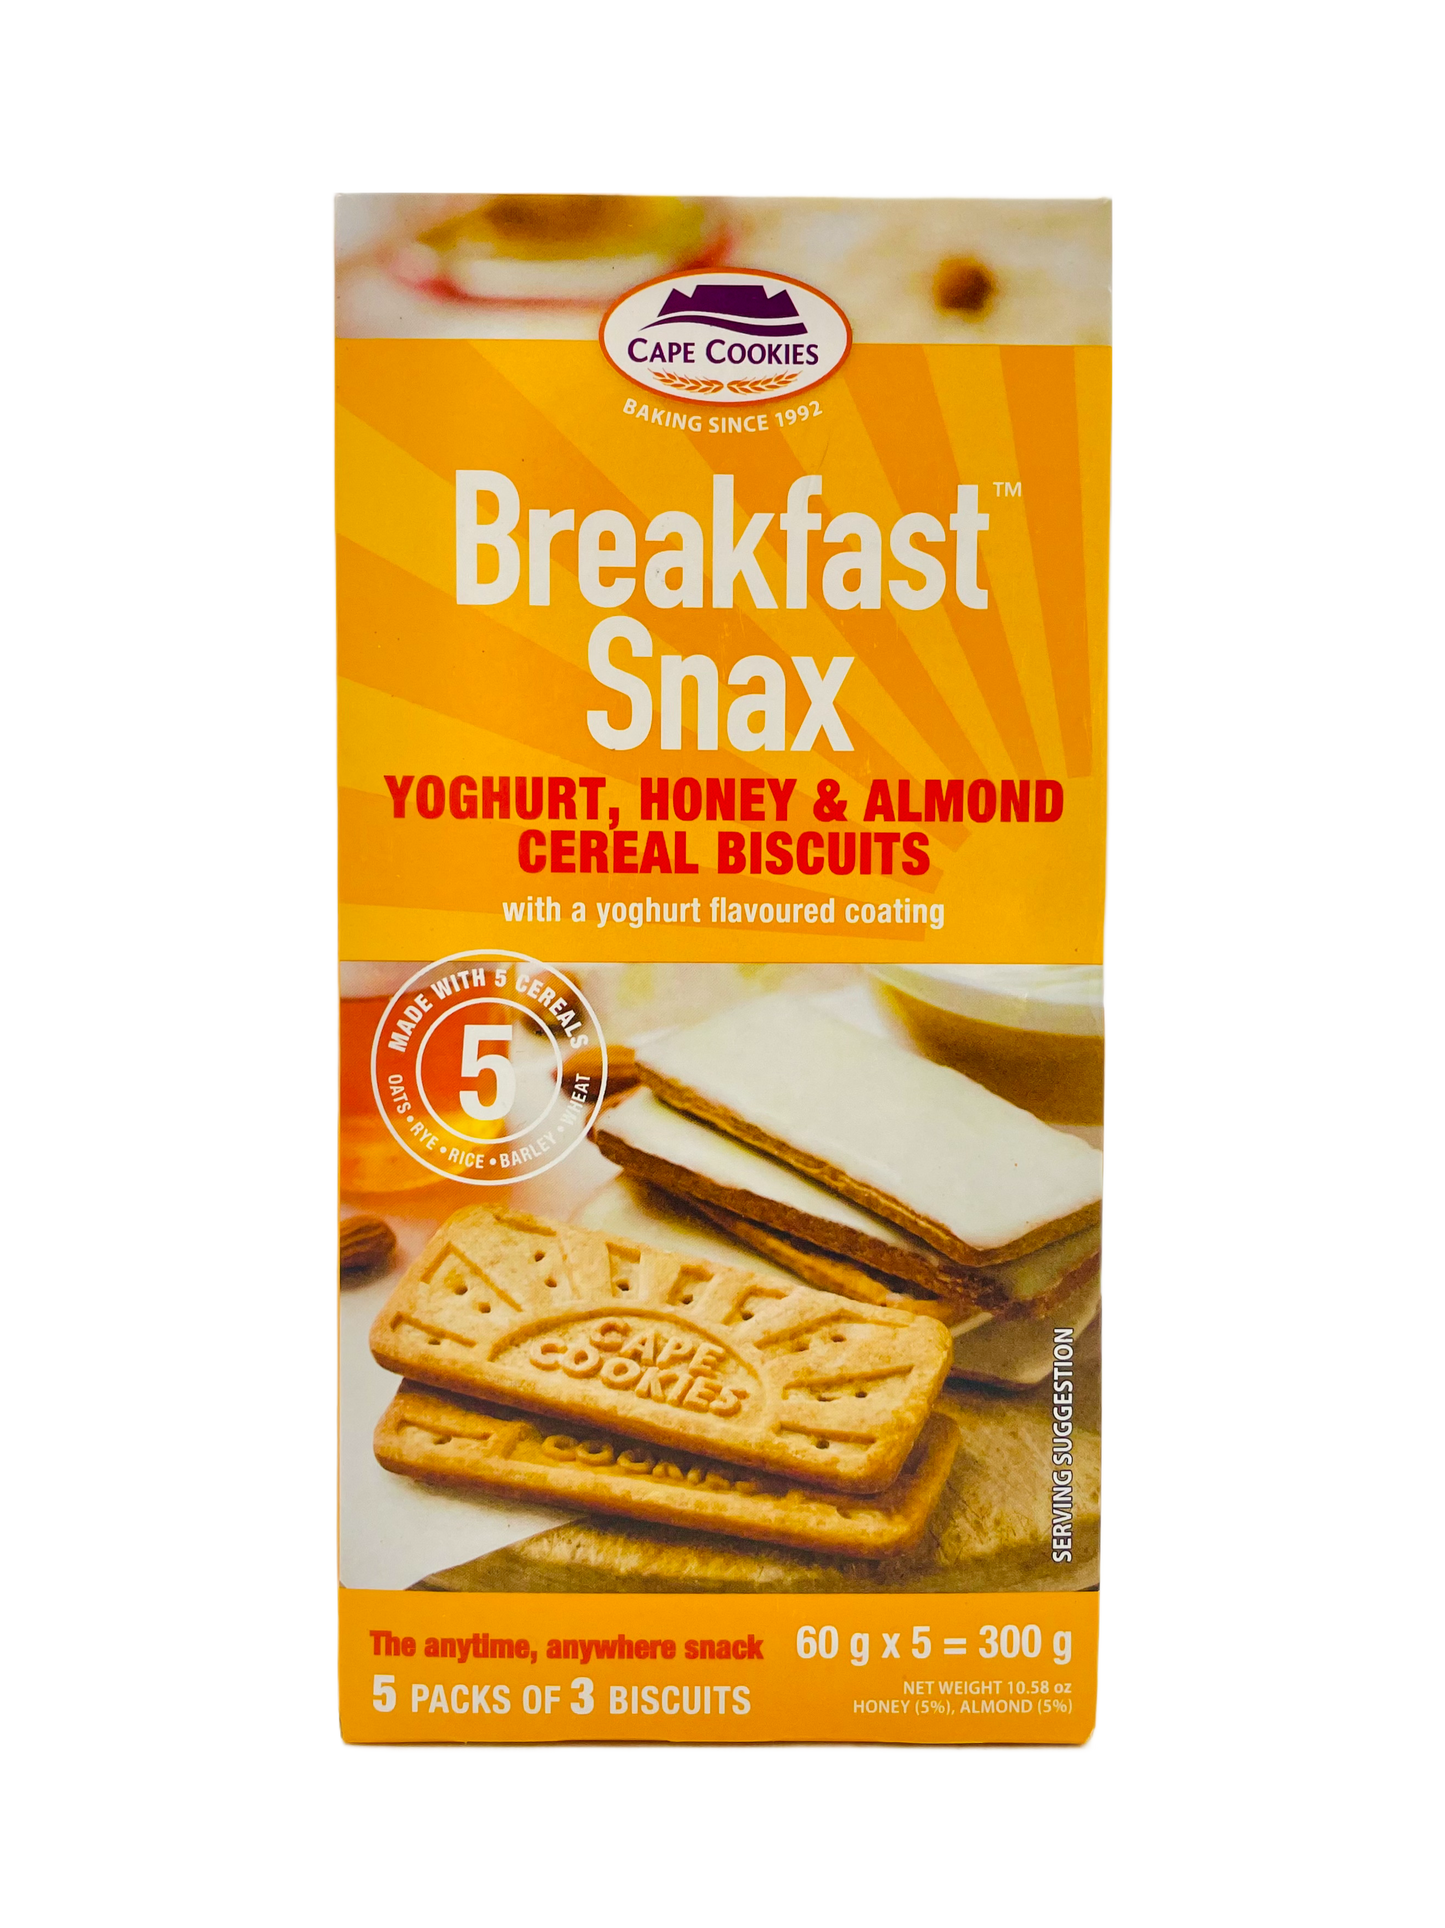 Cape Cookies Breakfast Snax Yoghurt, Honey & Almond Cereal Biscuits 300g